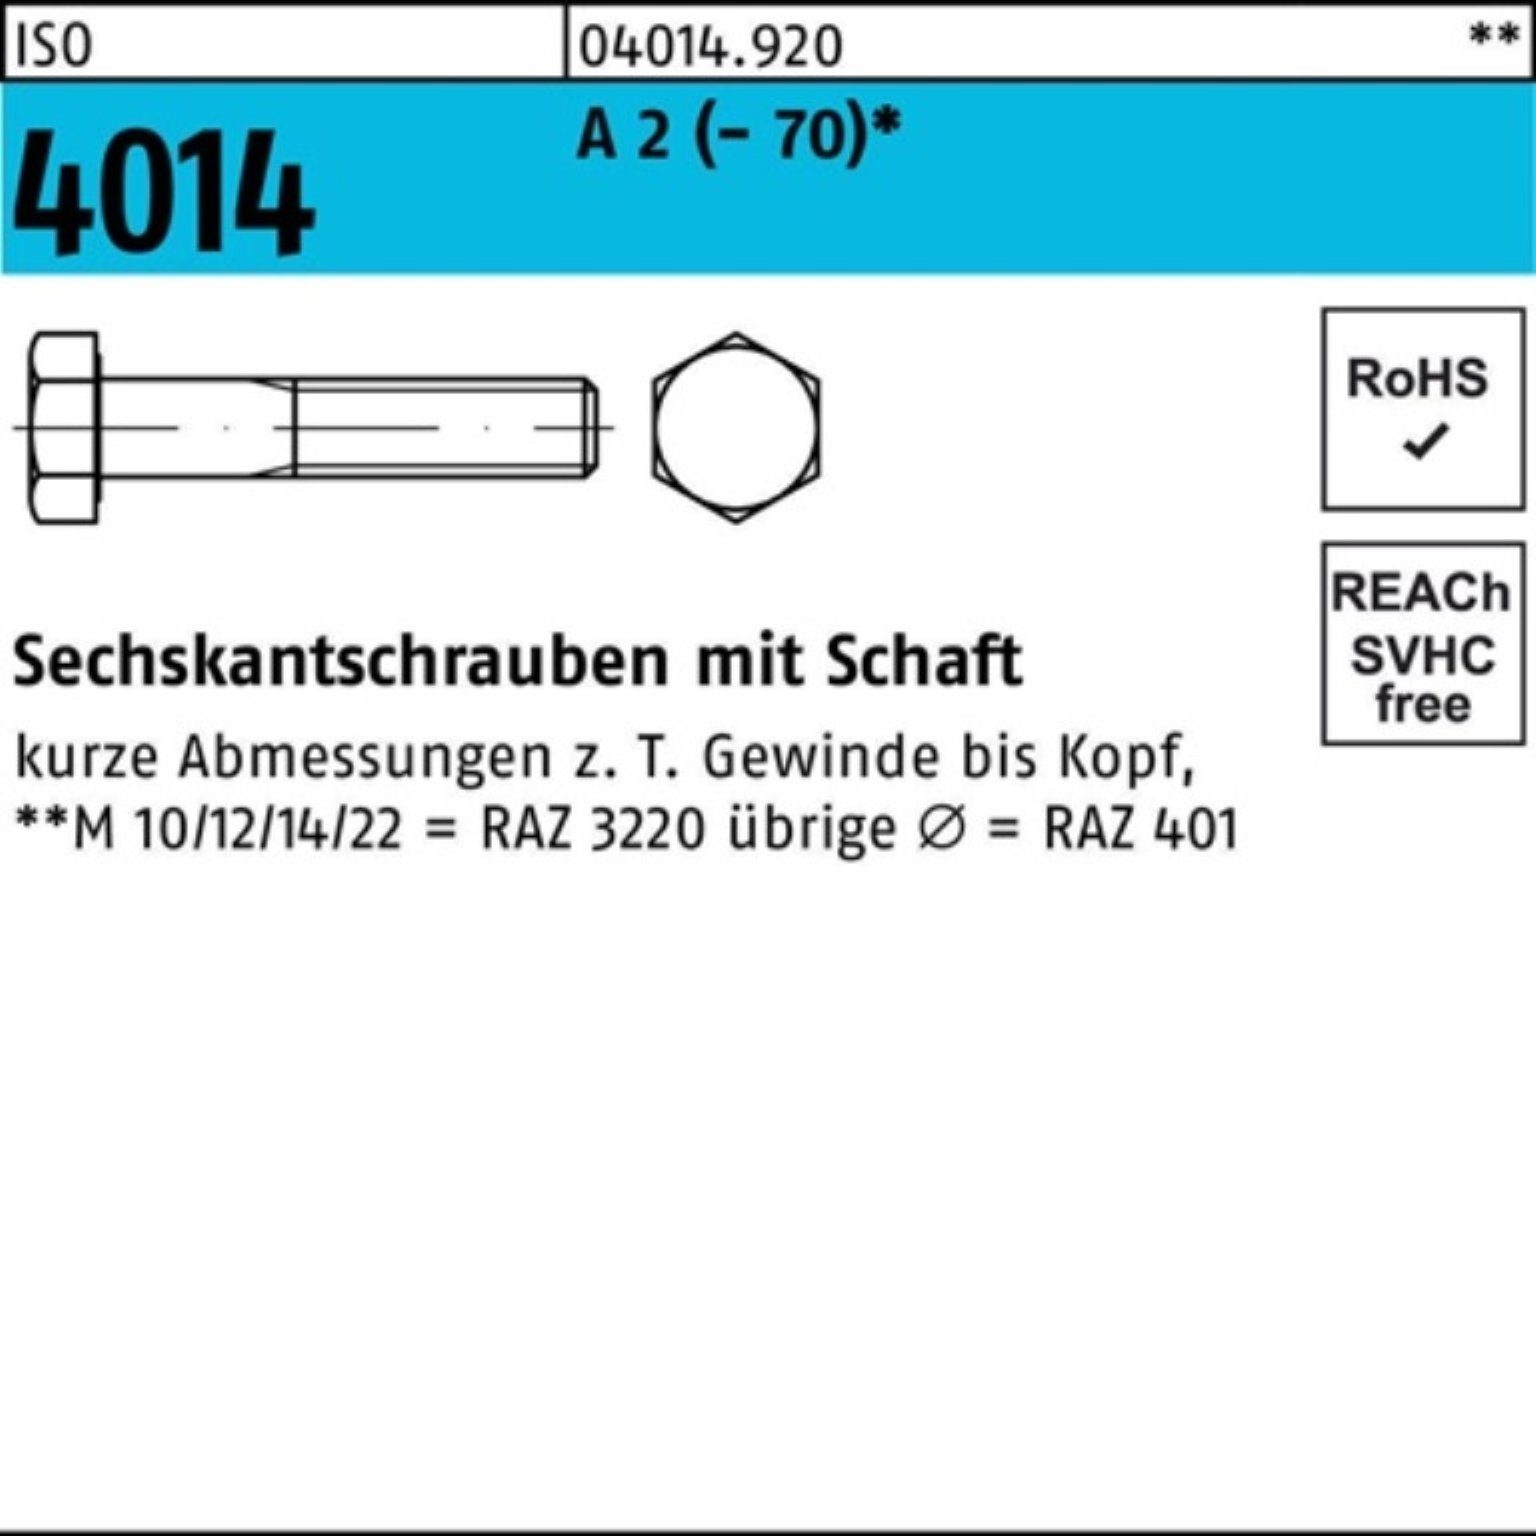 Bufab Sechskantschraube 100er 10 ISO St (70) Sechskantschraube M22x A 2 Schaft Pack 4014 90